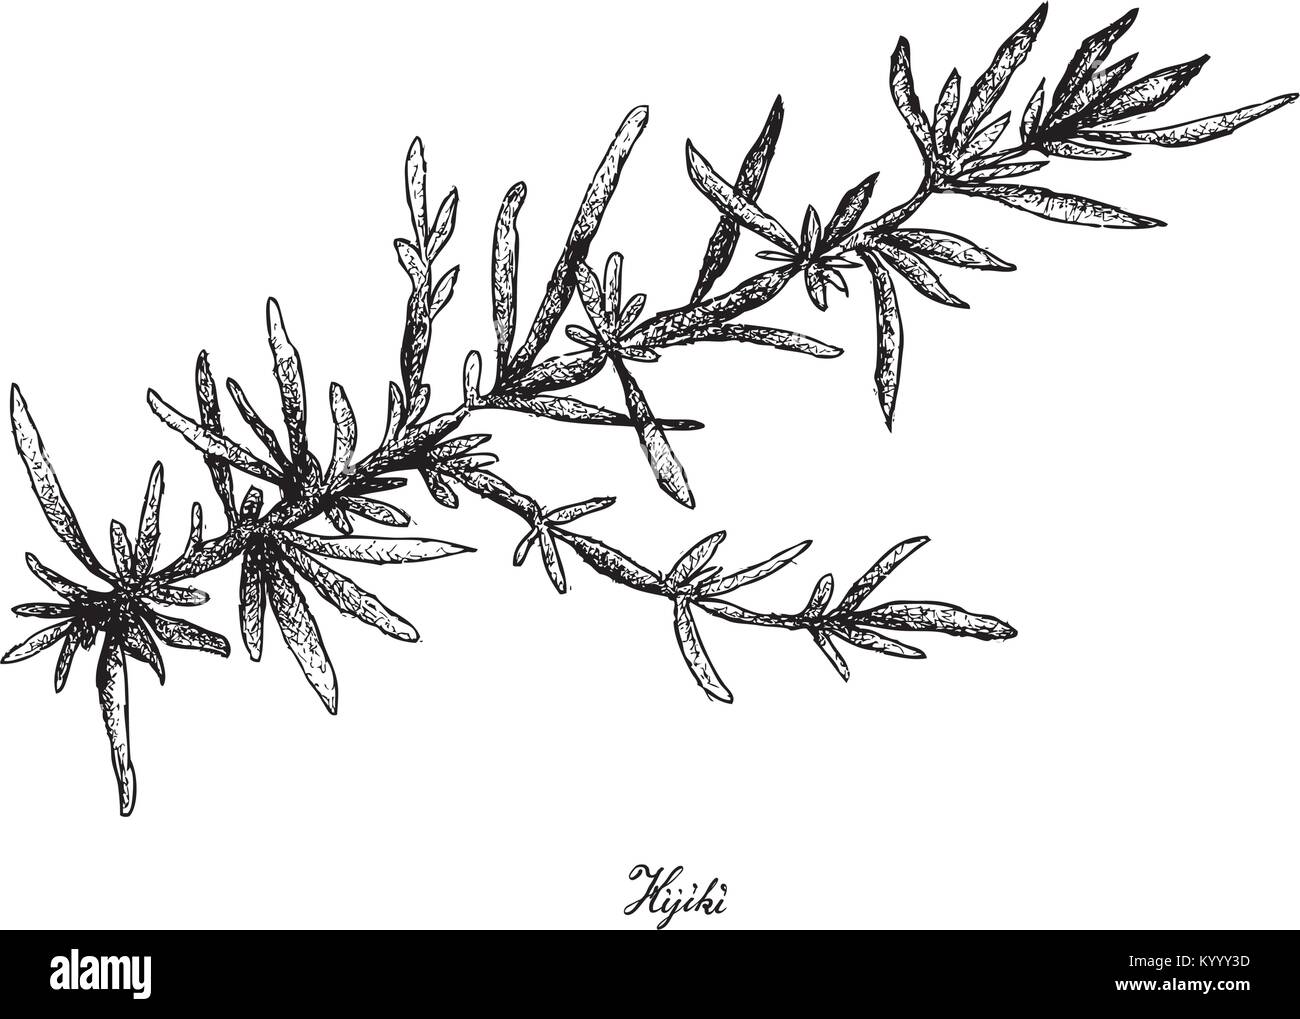 Sargassum algae Stock Vector Images - Alamy